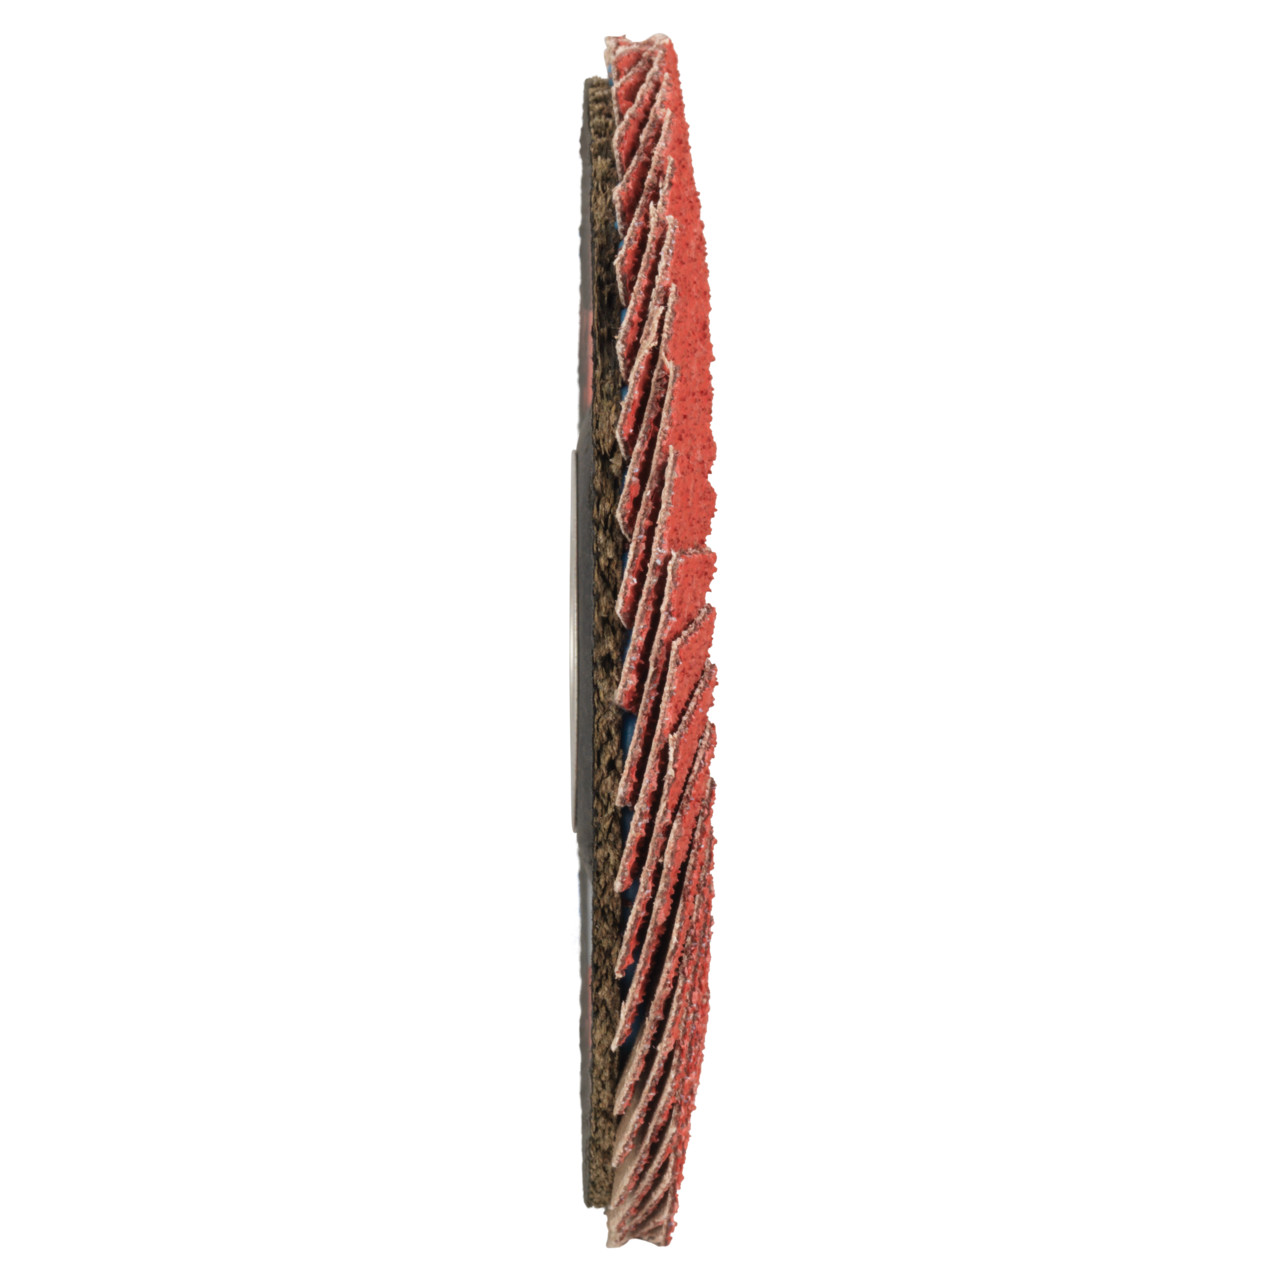 Tyrolit Arandela de seguridad dentada DxH 178x22,23 CERÁMICA para acero inoxidable, P80, forma: 28A - versión recta (versión con cuerpo de soporte de fibra de vidrio), Art. 34166861